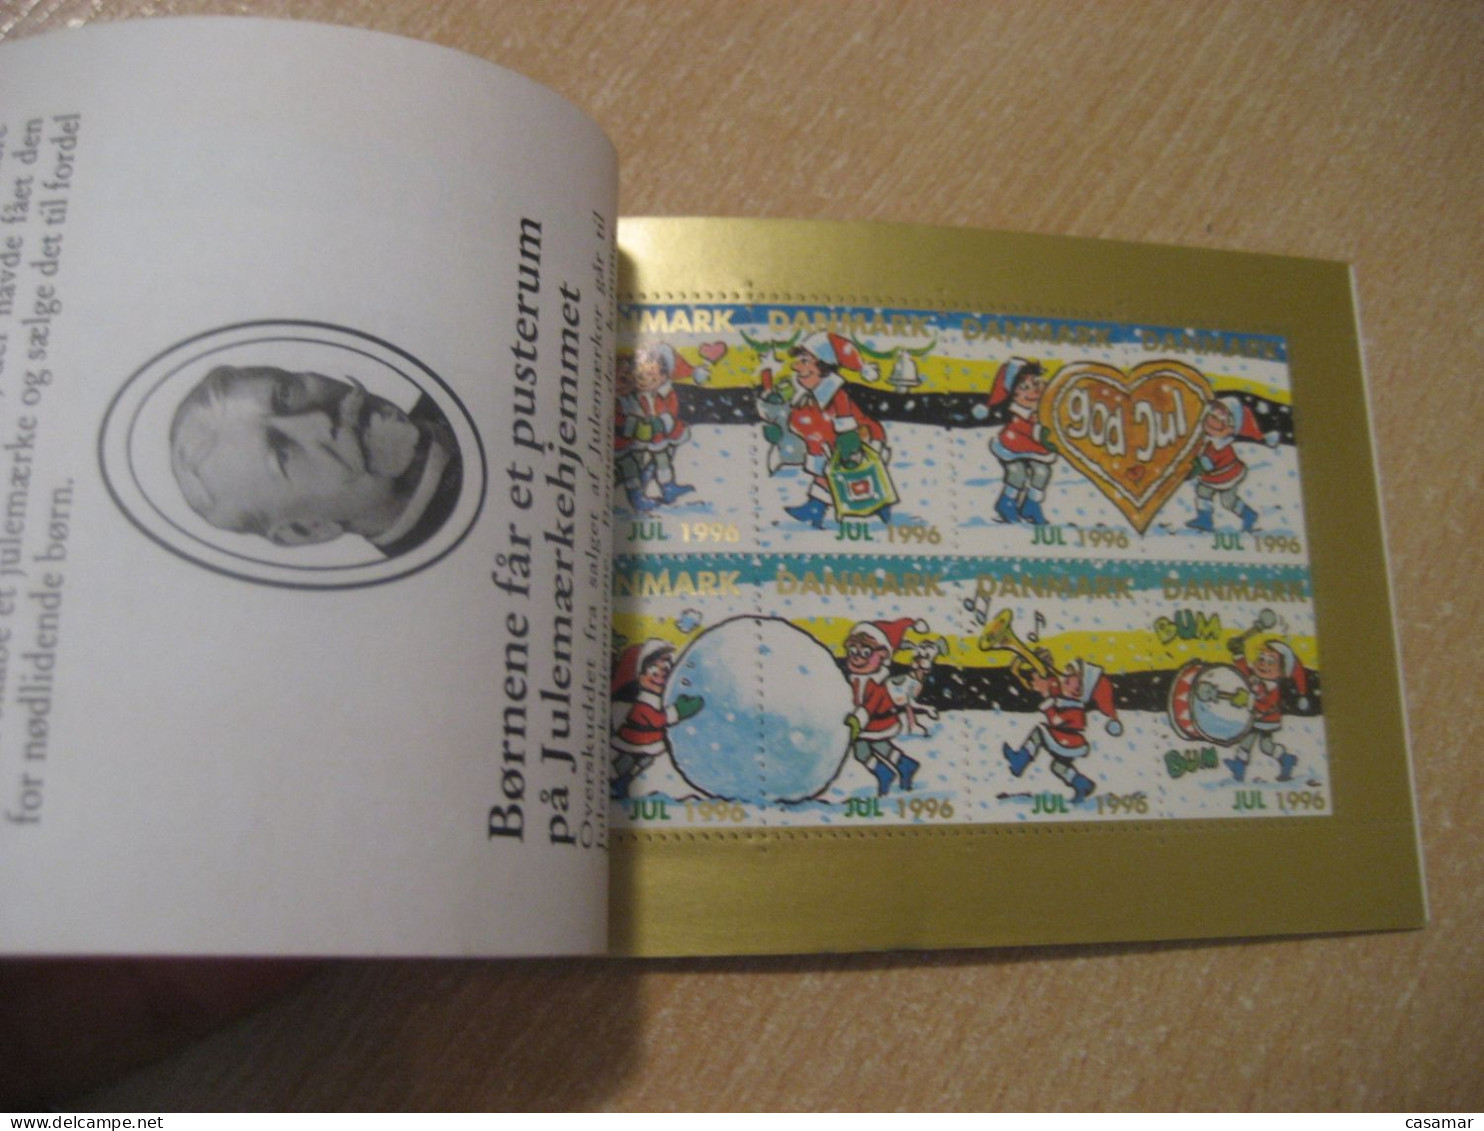 DENMARK 1996 Dog Sleigh Sled Julemaerket Booklet Christmas 24 Poster Stamp Vignette (3 Sheet X 8 Label) - Postzegelboekjes